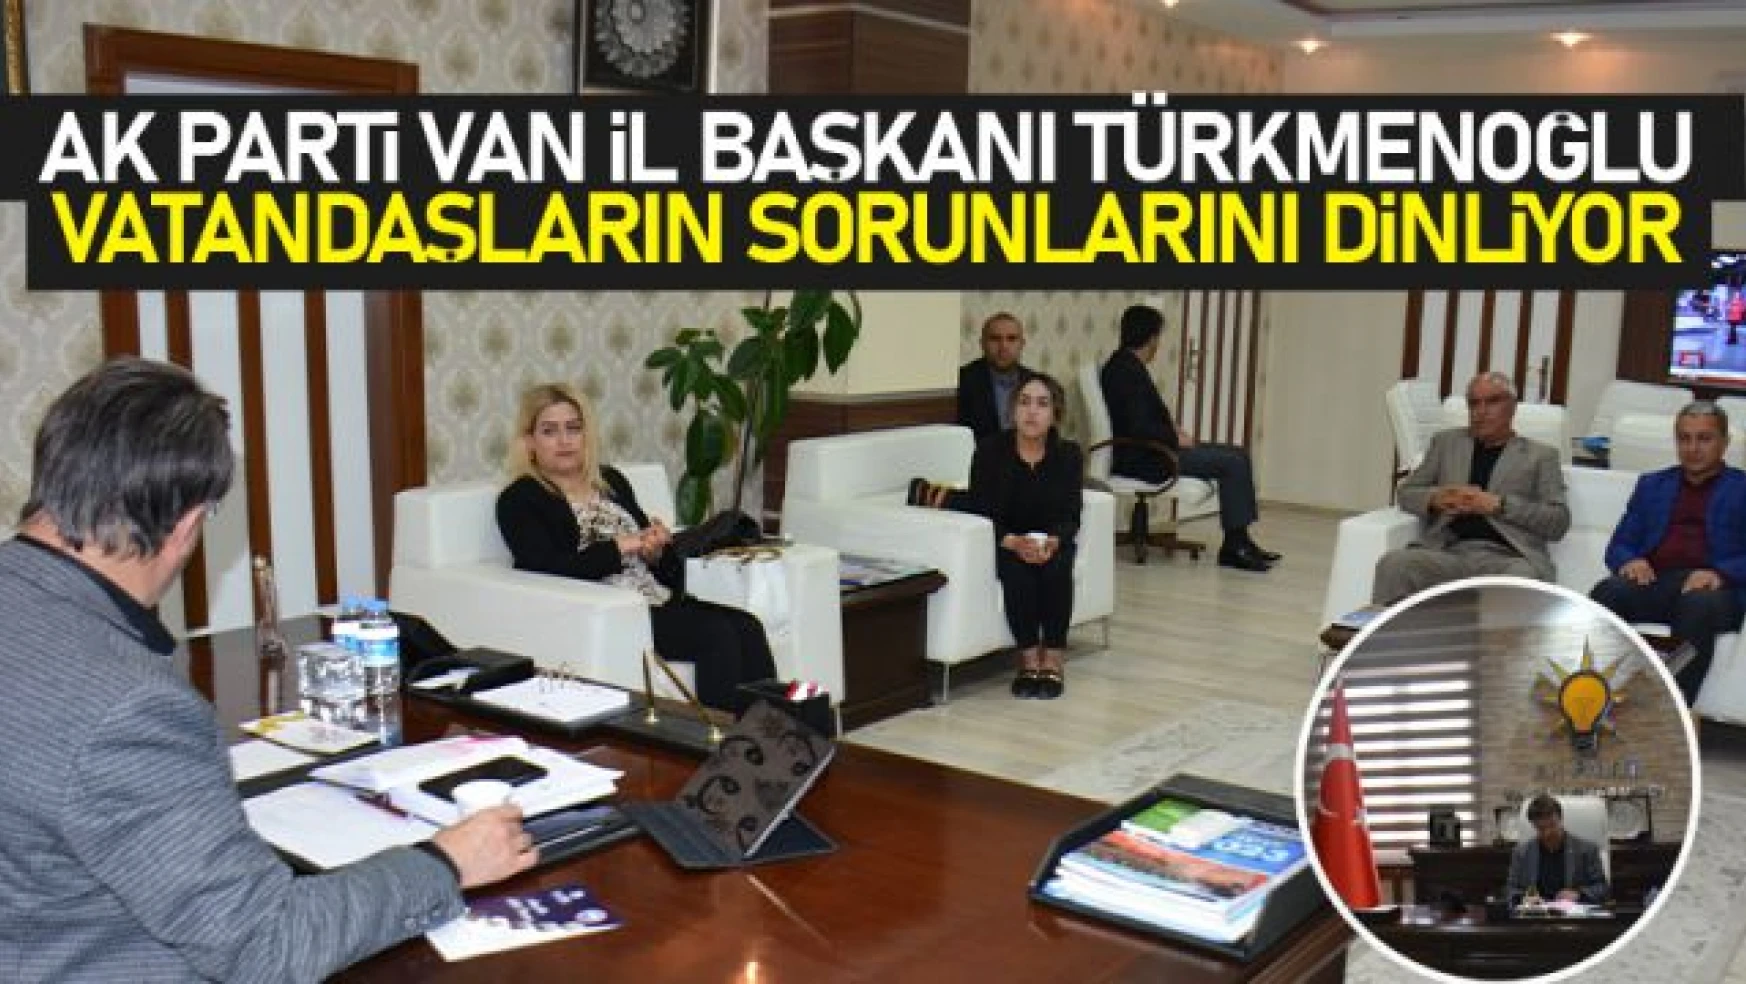 AK Parti Van İl Başkanı Türkmenoğlu, vatandaşların sorunlarını dinliyor